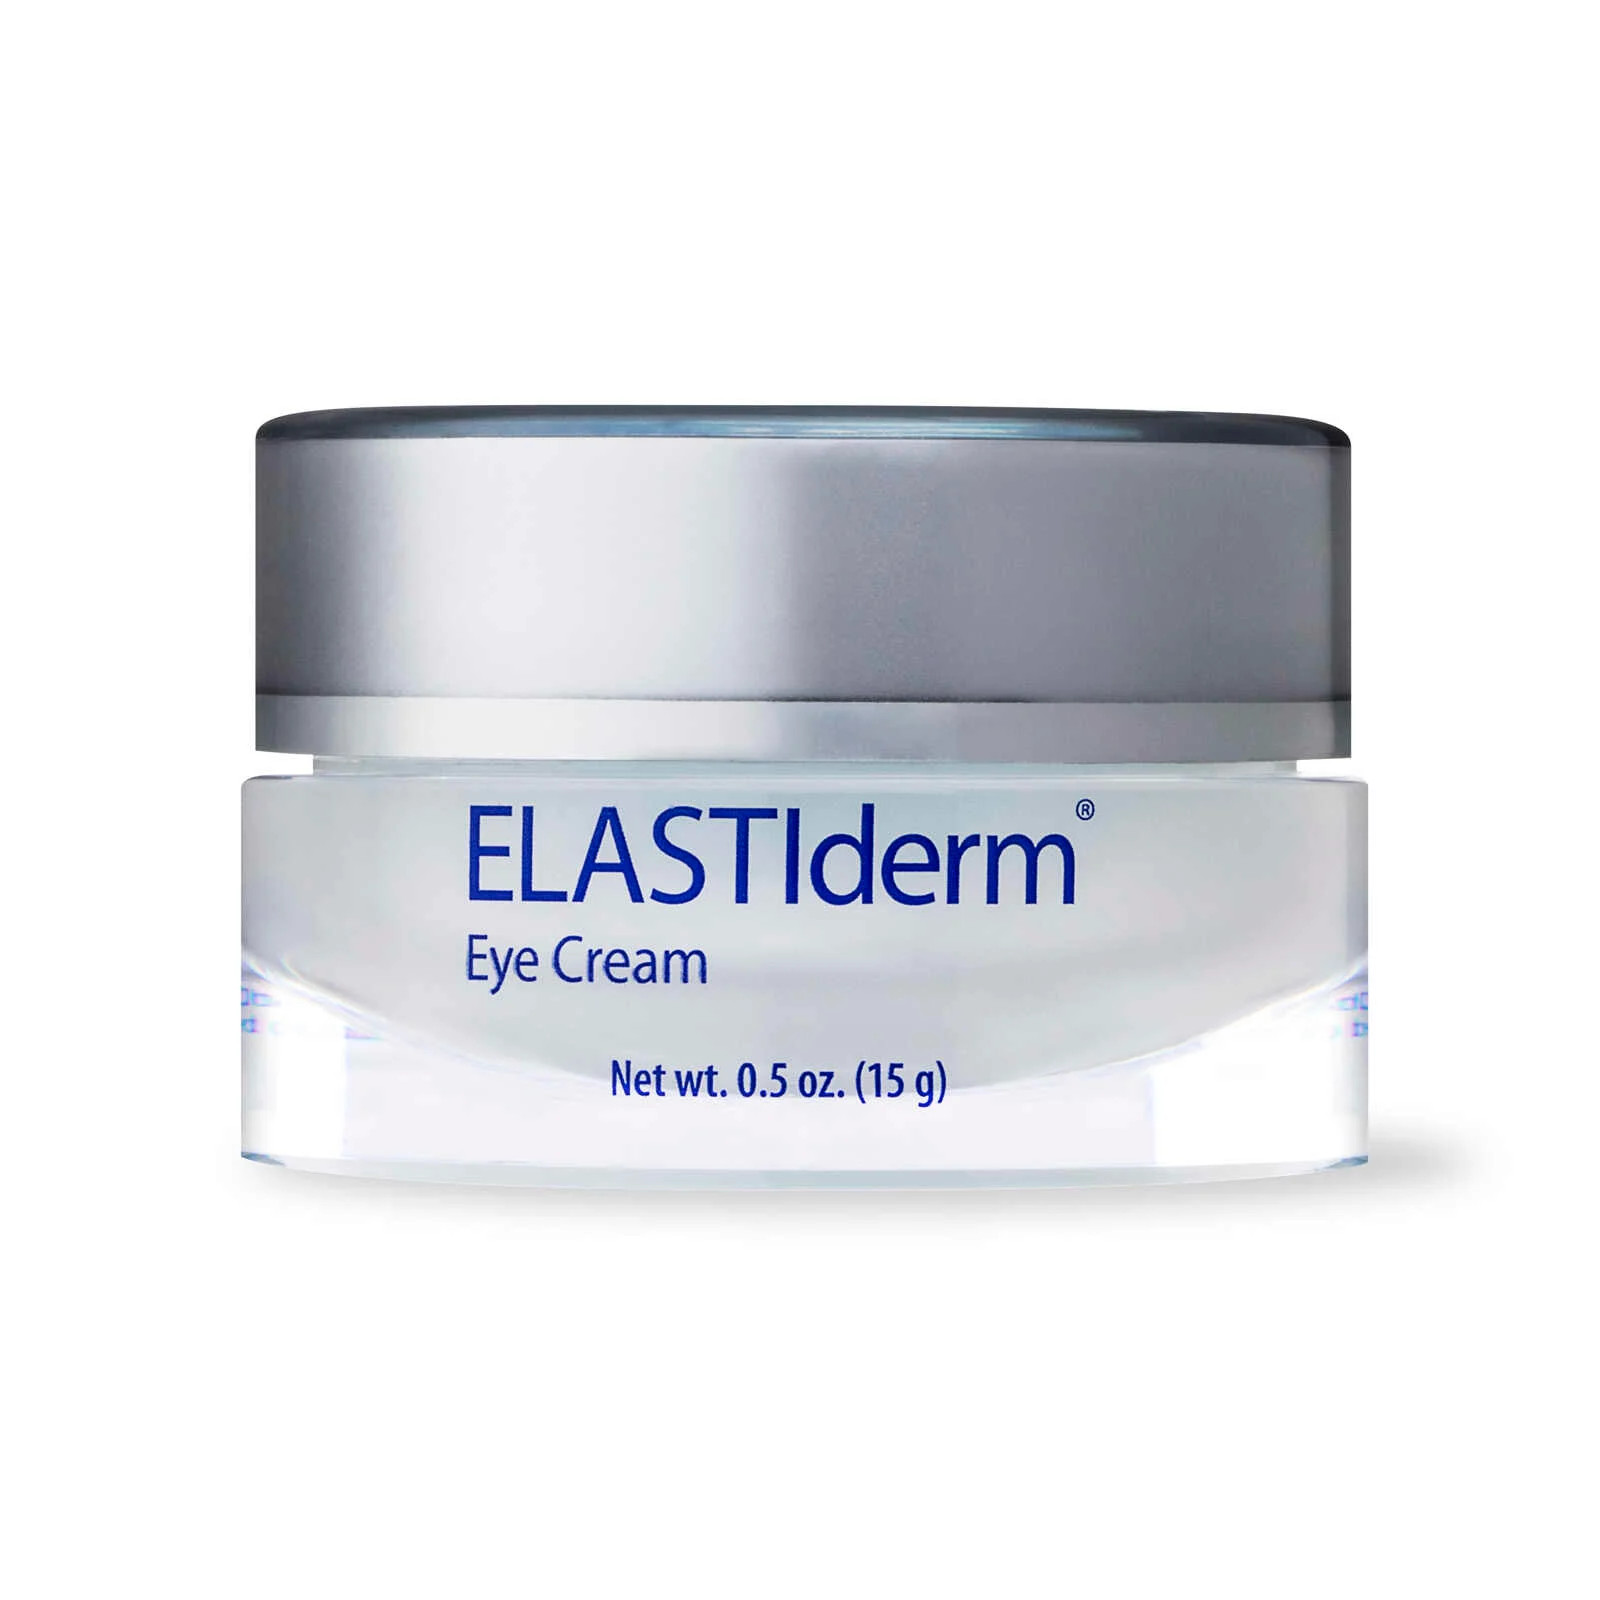 Obagi Elastiderm Eye Cream 15g - Kem Giảm Nếp Nhăn & Trẻ Hóa Vùng Mắt